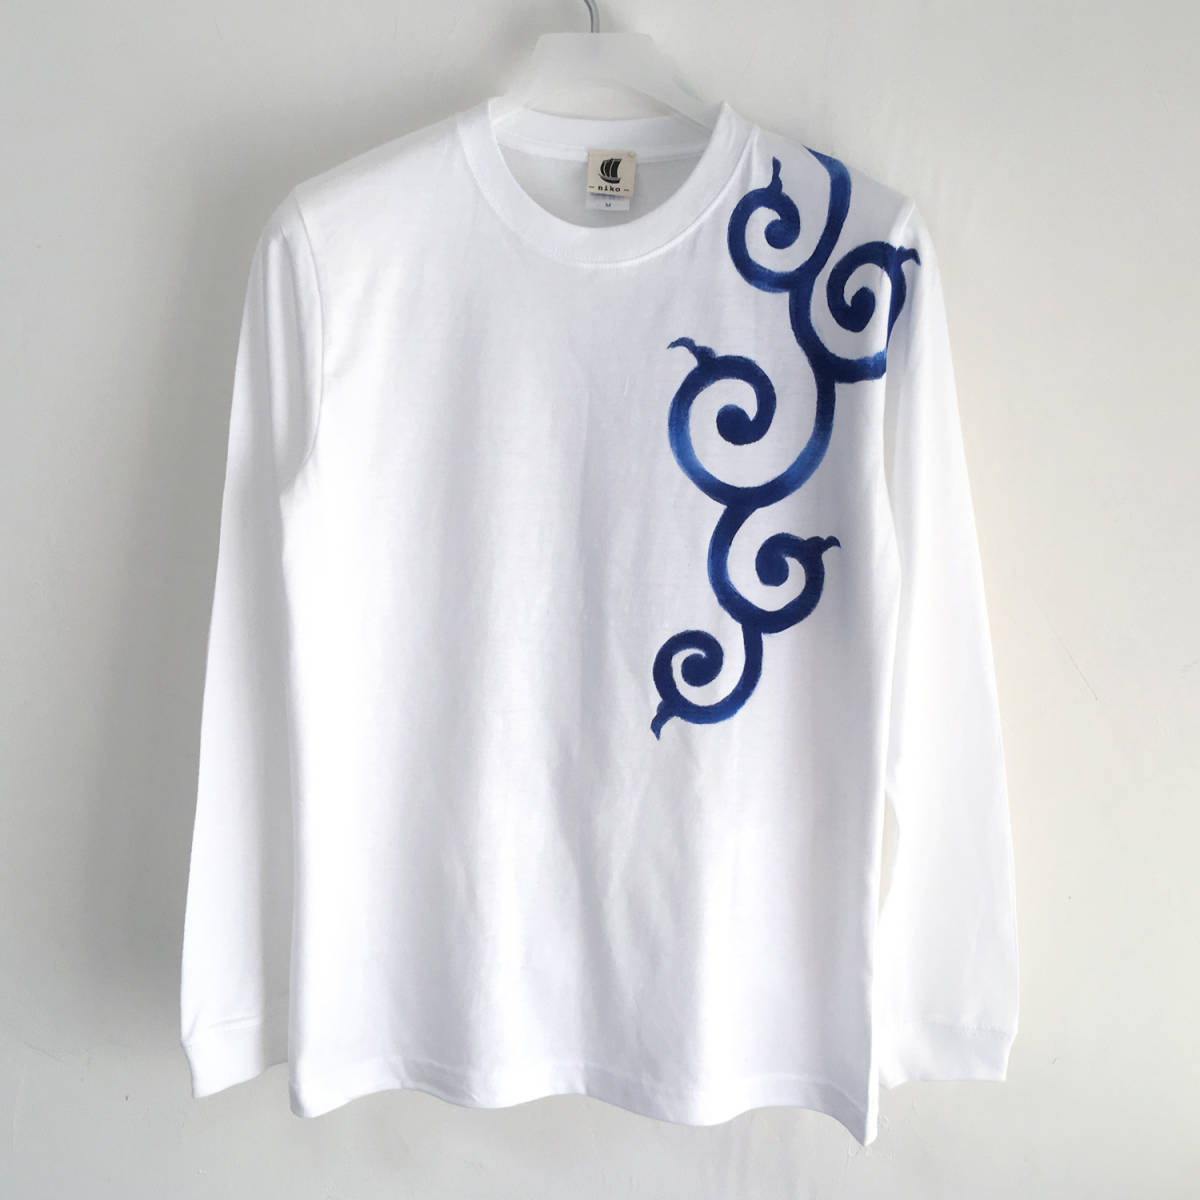 हाथ से तैयार अरबी पैटर्न रिब्ड स्लीव लंबी टी-शर्ट XS सफेद लंबी आस्तीन शरद ऋतु/शीतकालीन सफेद जापानी पैटर्न जापानी शैली, टी-शर्ट, लम्बी आस्तीन, आकार XS और नीचे